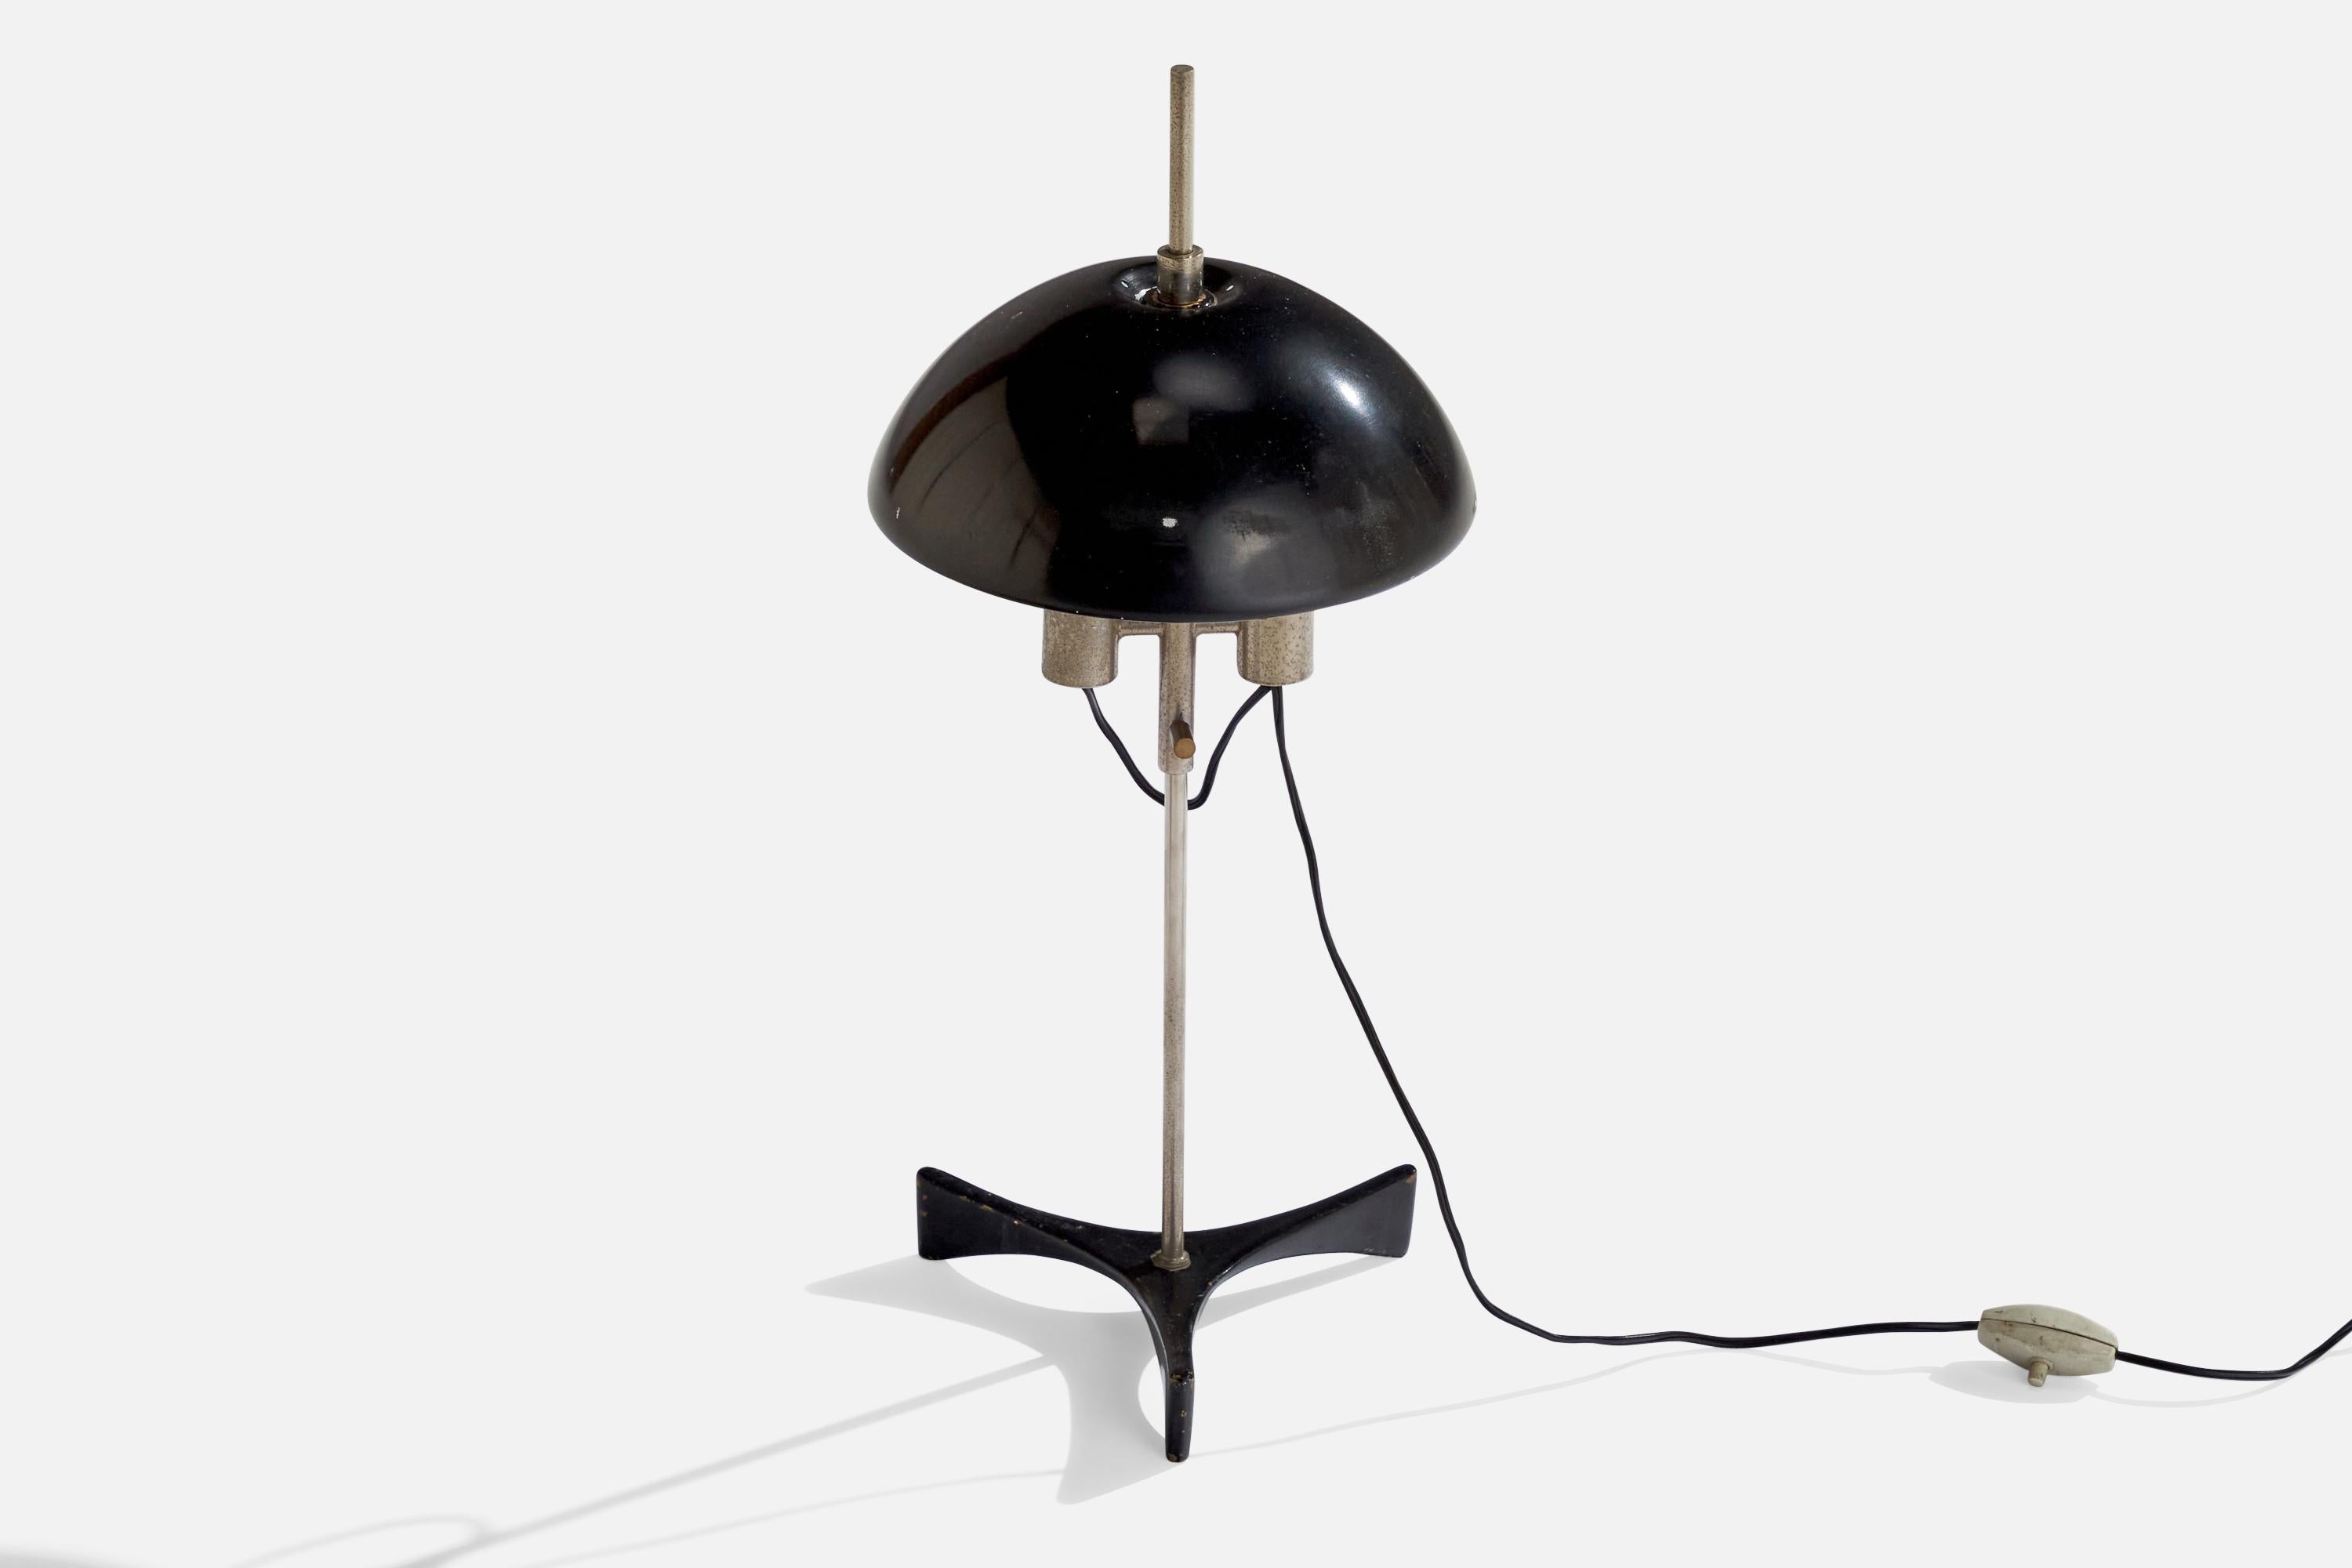 Lampe de table en acier et en métal laqué noir, conçue et produite en Italie, années 1950.

Dimensions globales (pouces) : 19